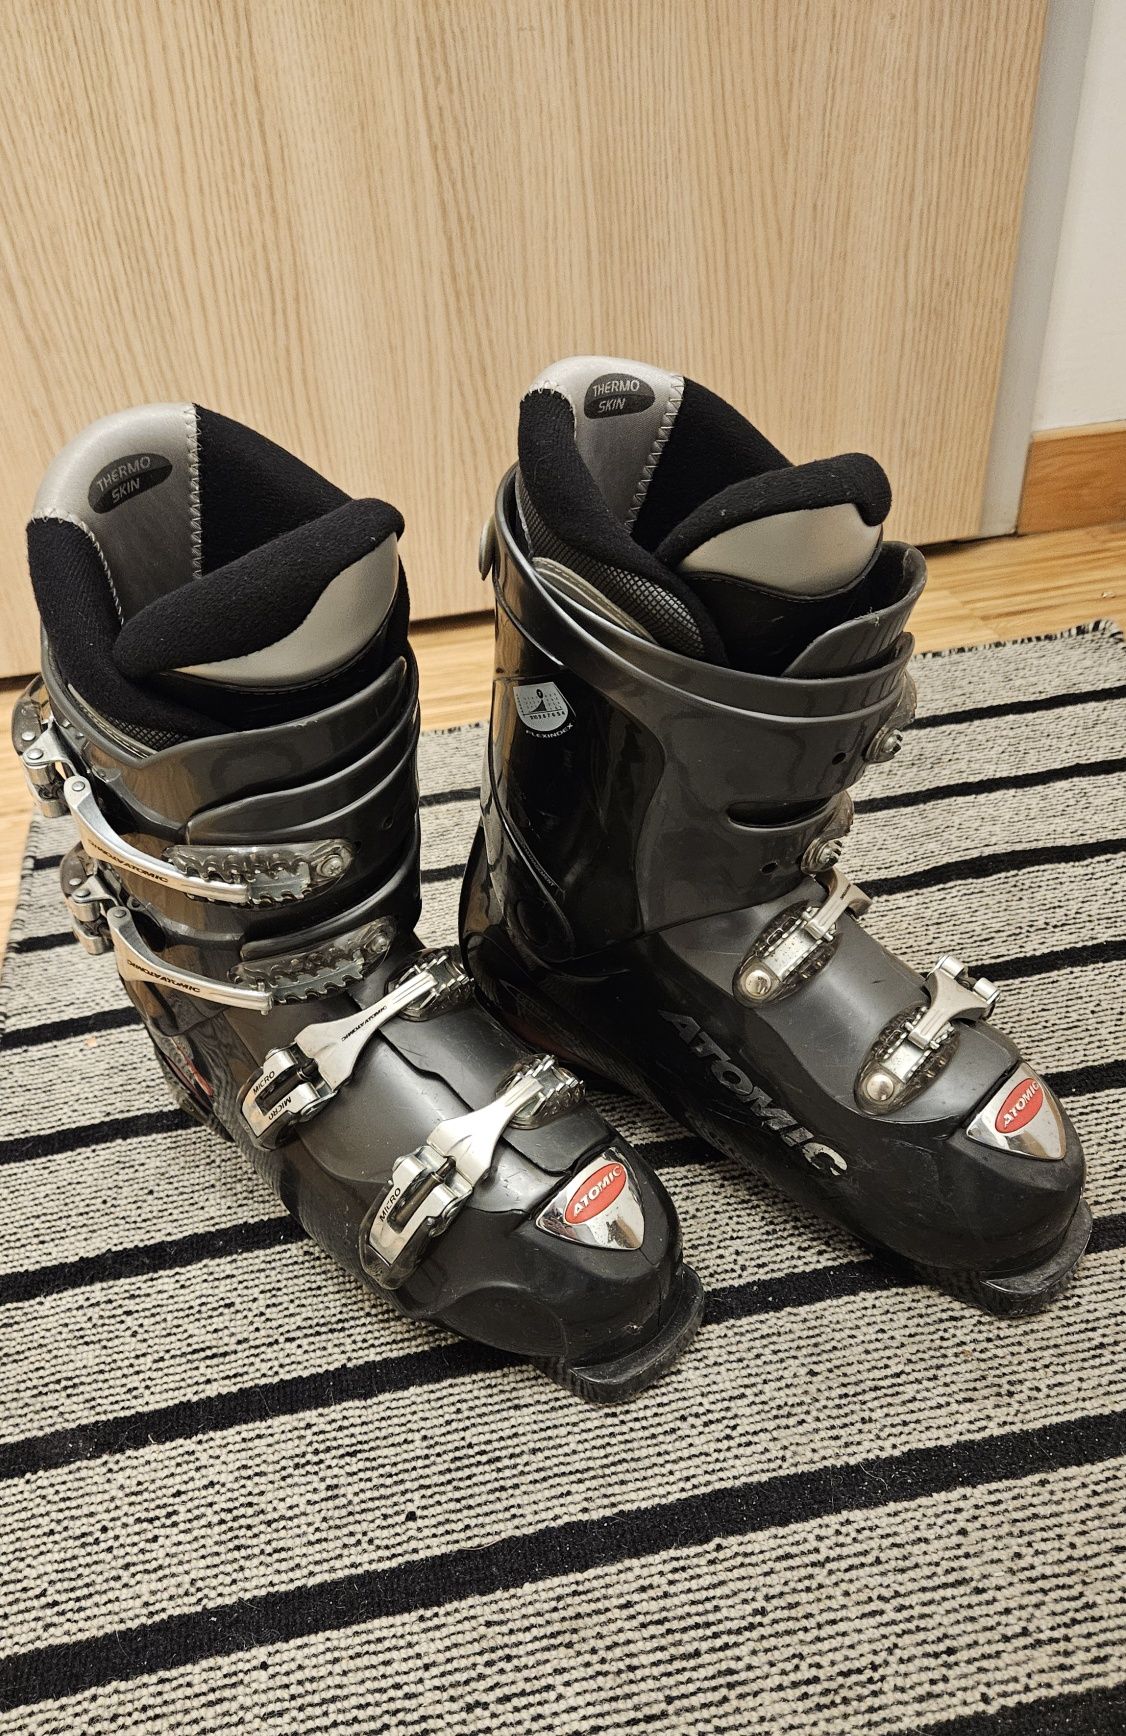 Buty narciarskie Atomic r. wkładki 26-26,5 (r.buta 40)